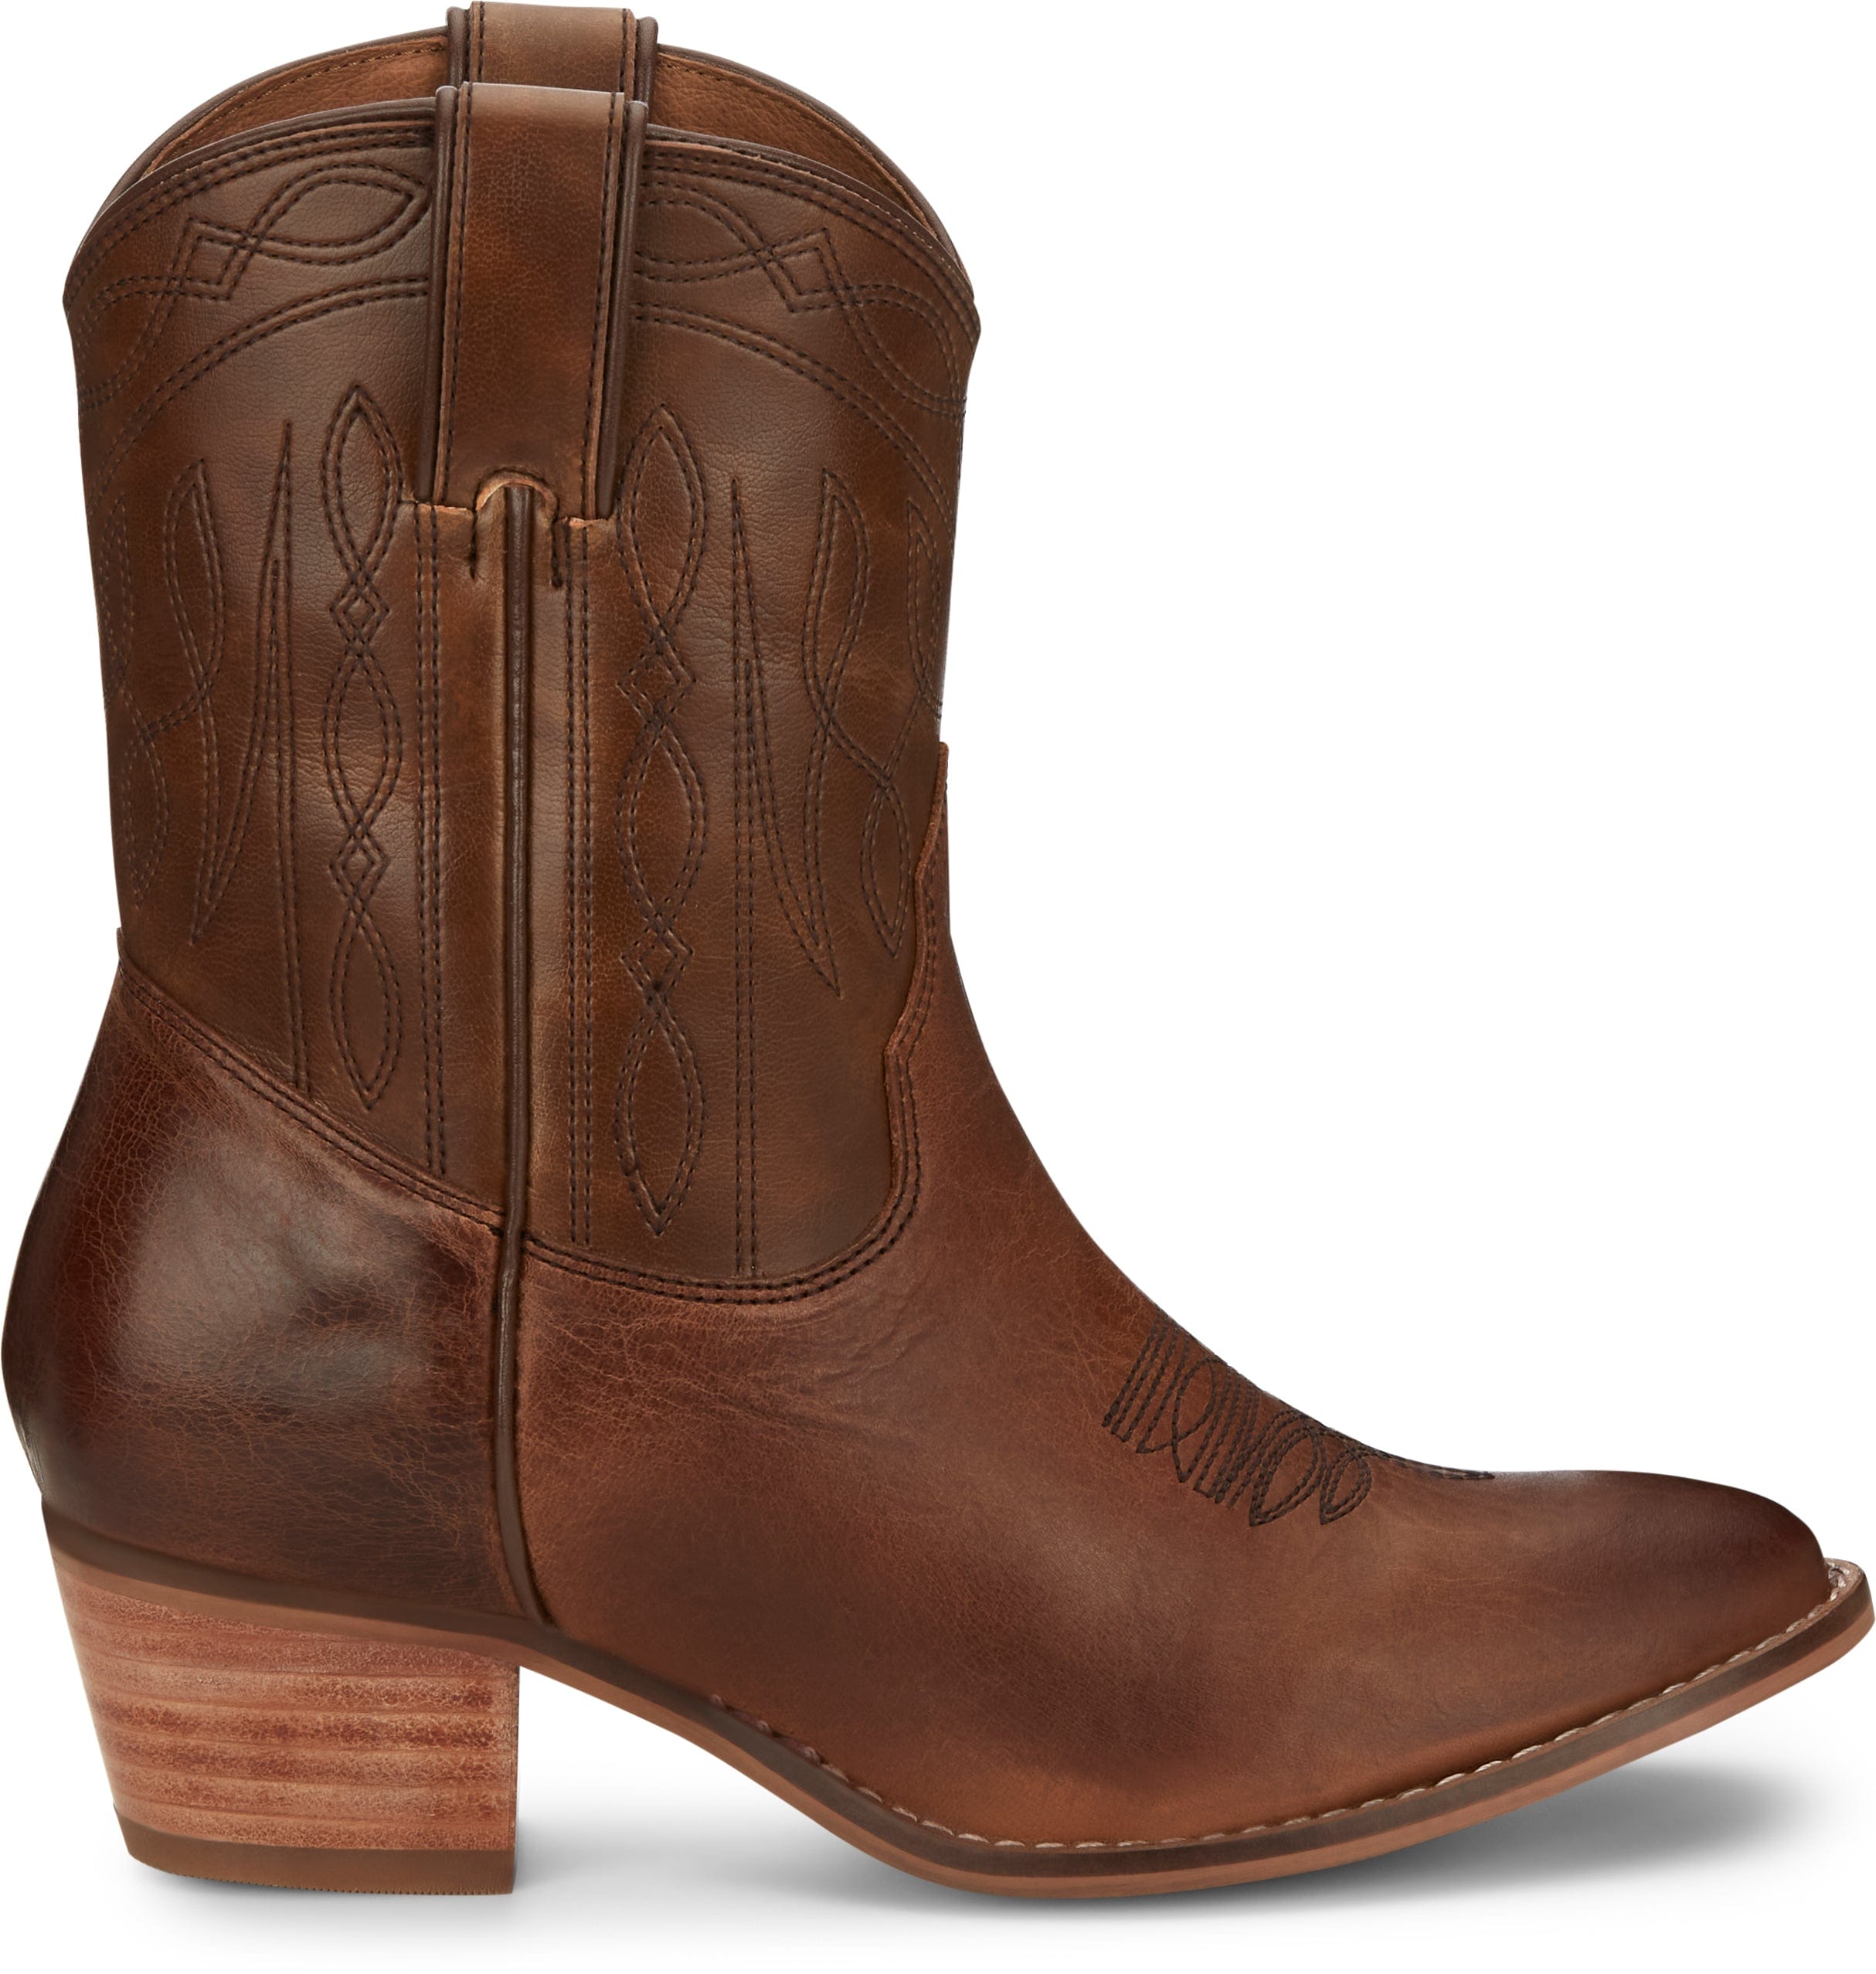 https://www.russells.com/cdn/shop/products/nocona-boots-nocona-women-s-eva-honey-brown-round-toe-booties-me1925-35527008747678_5000x.jpg?v=1691086978